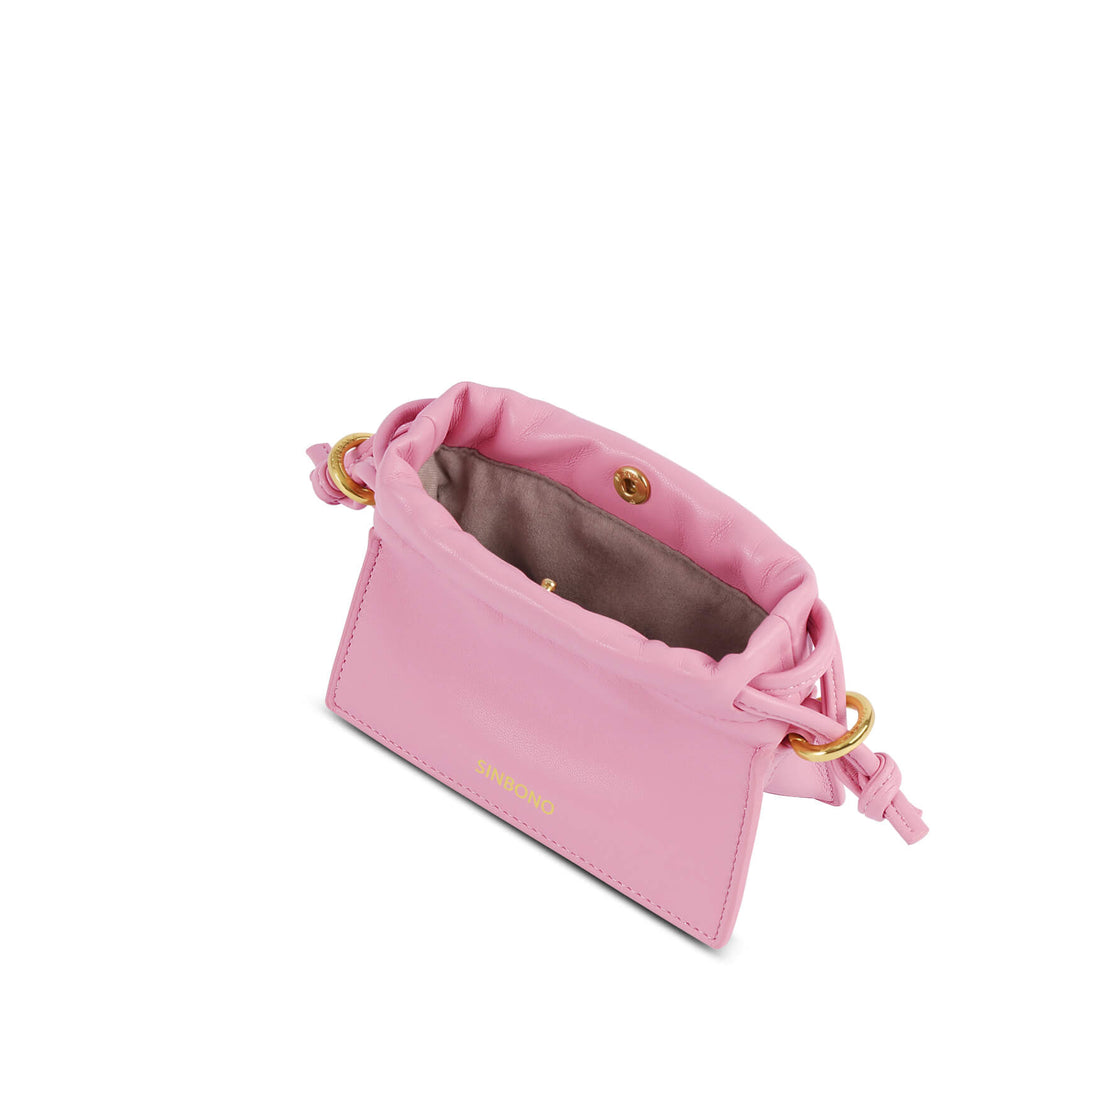 SINBONO Mini Drawstring Vegan Handbags Pink